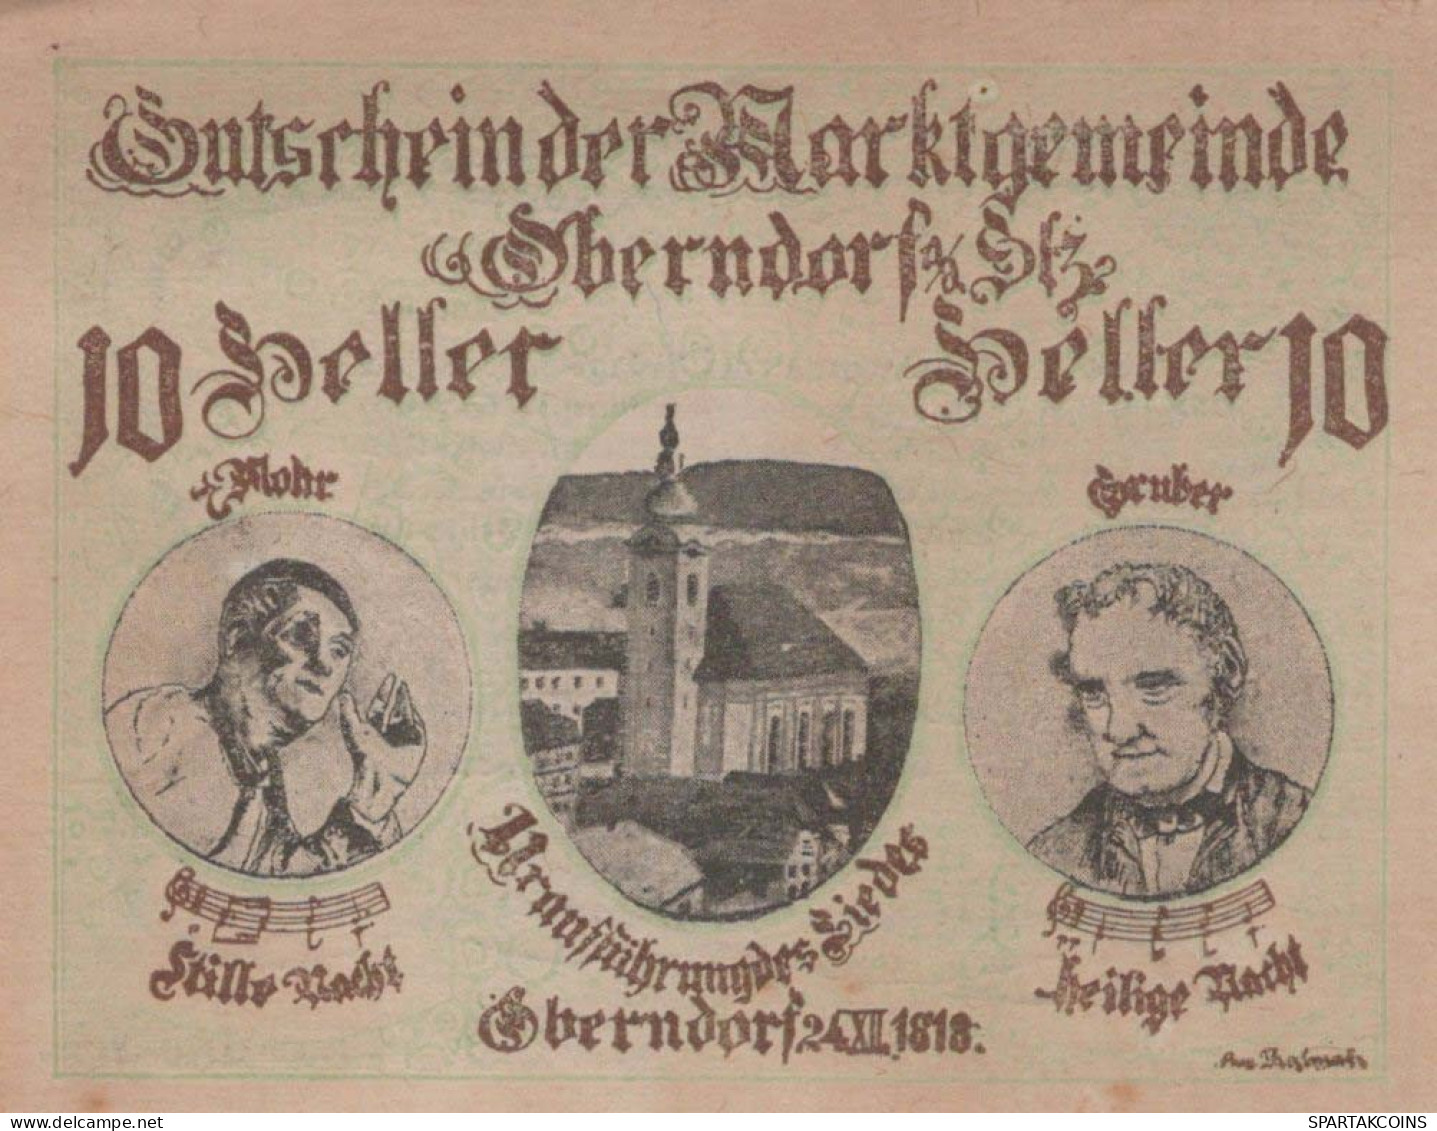 10 HELLER 1920 Stadt OBERNDORF AN DER SALZBACH Salzburg Österreich #PE493 - [11] Local Banknote Issues